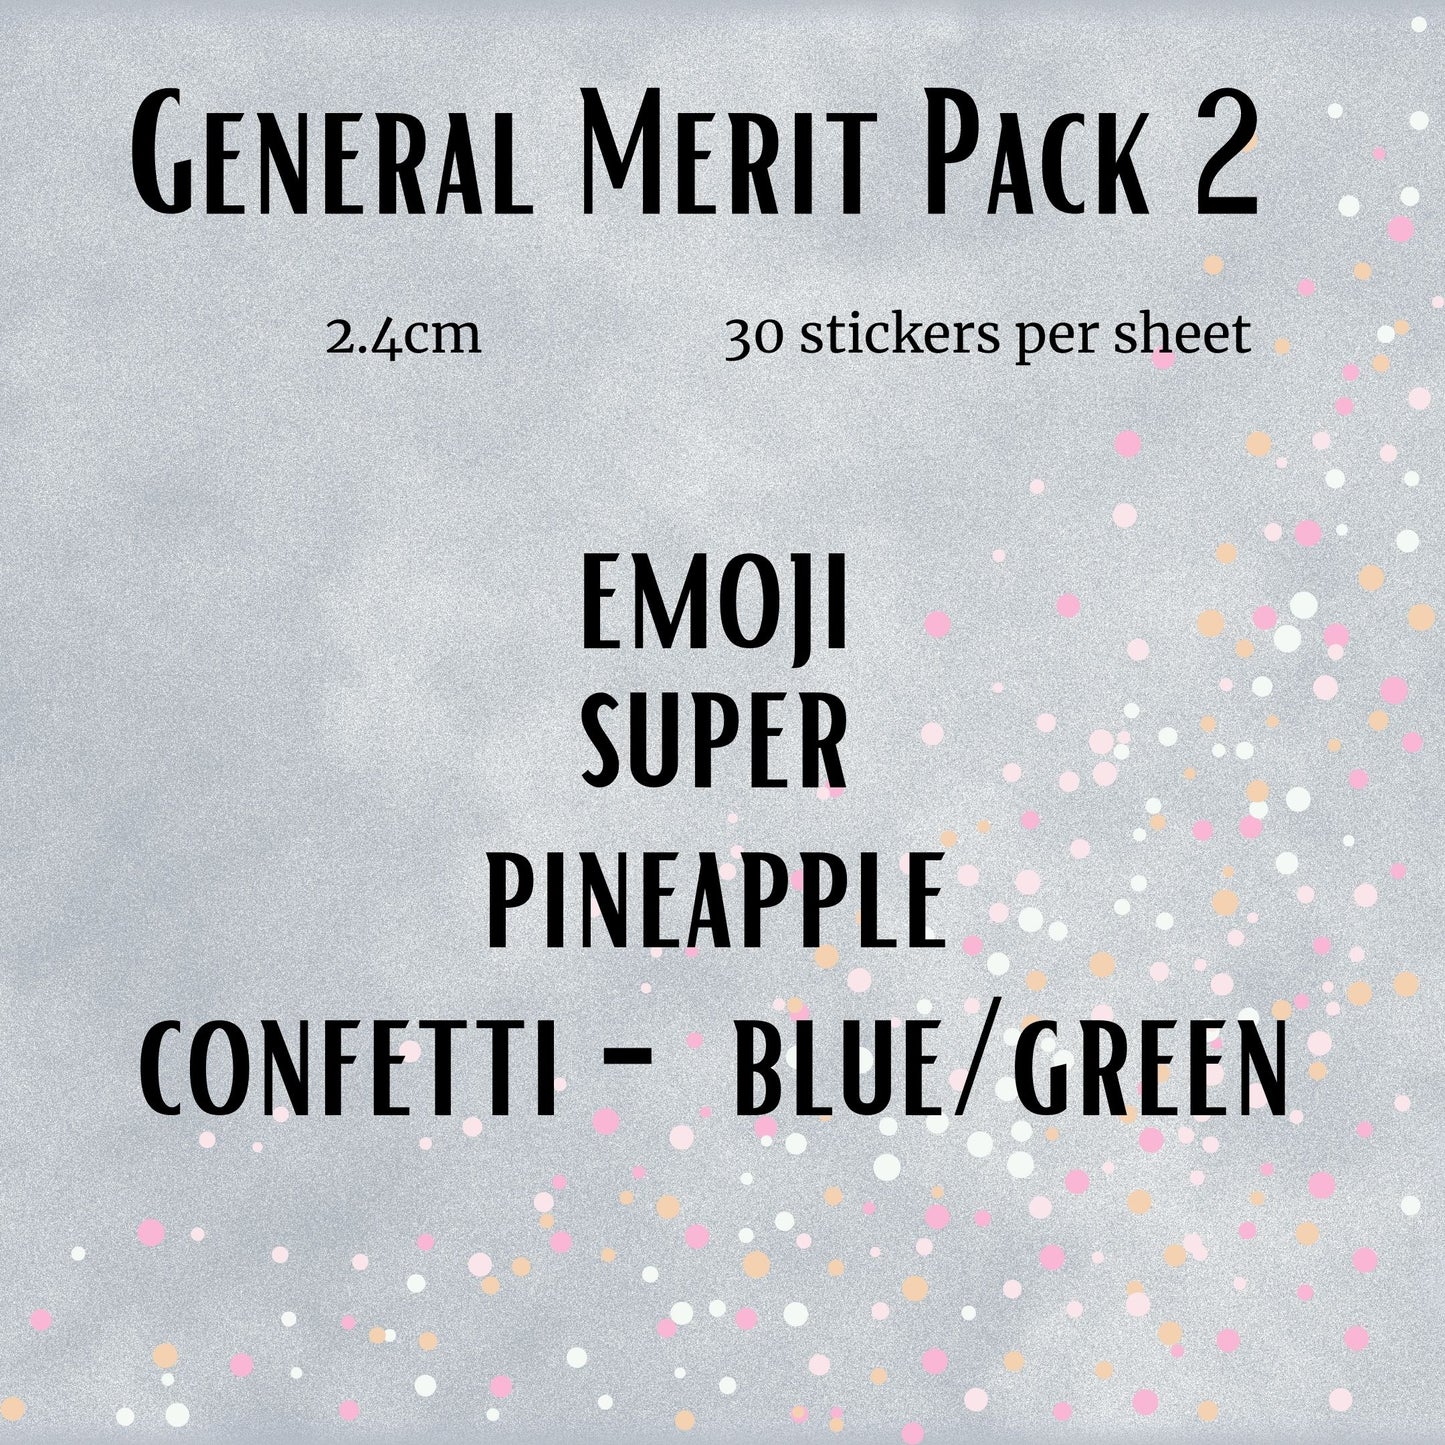 General Merit Pack 2